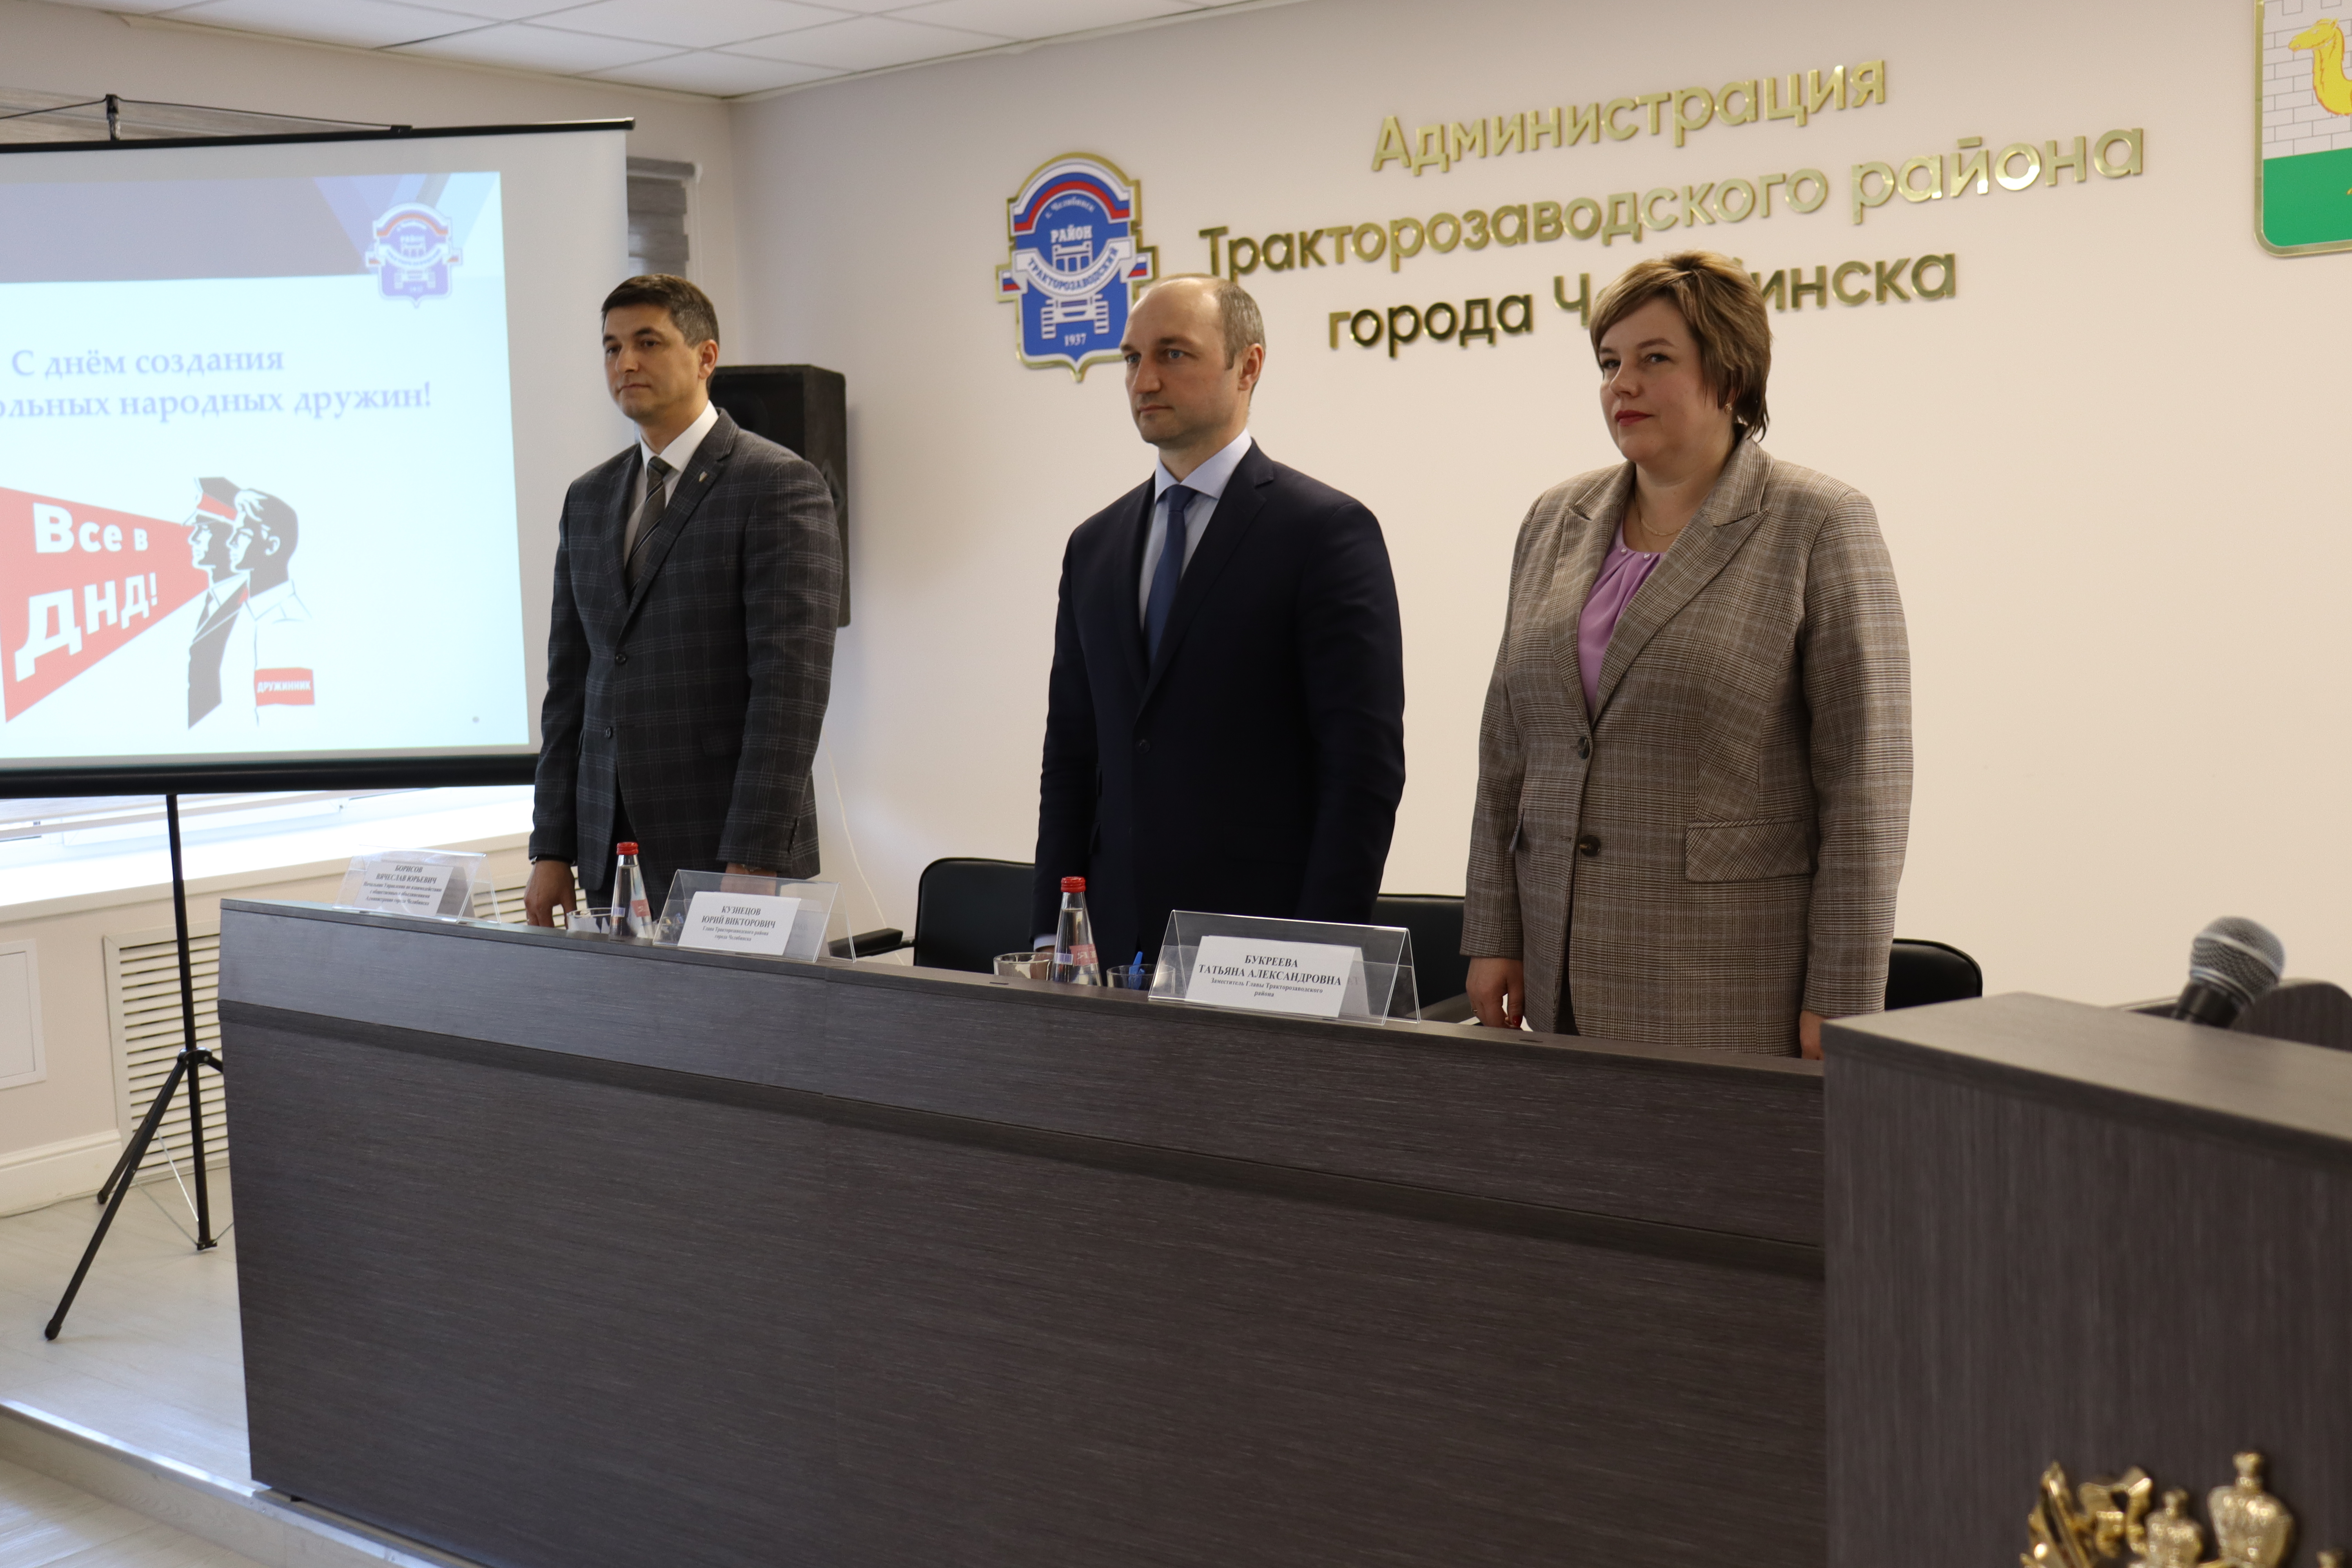 Состоялось выездное заседание Штаба по взаимодействию и координации деятельности народных дружин при Администрации города Челябинска